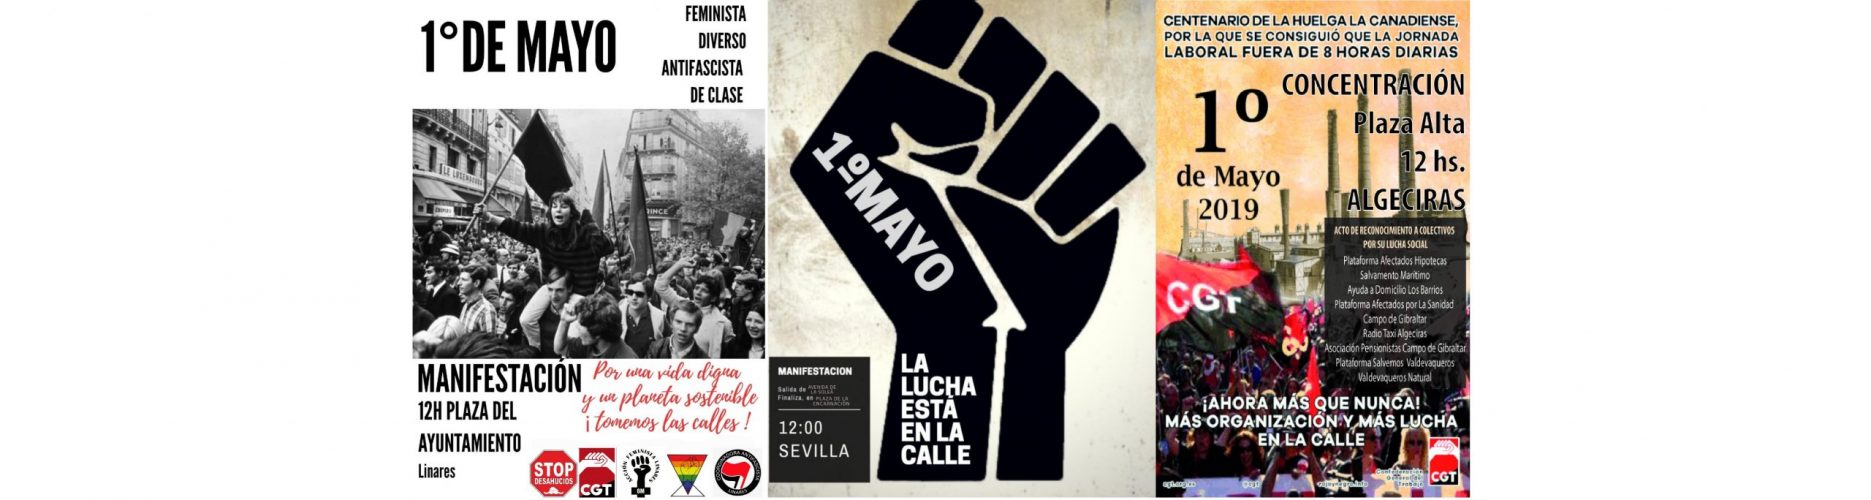 4228-Manifestacion-1-Mayo-Andalucia-Facebook